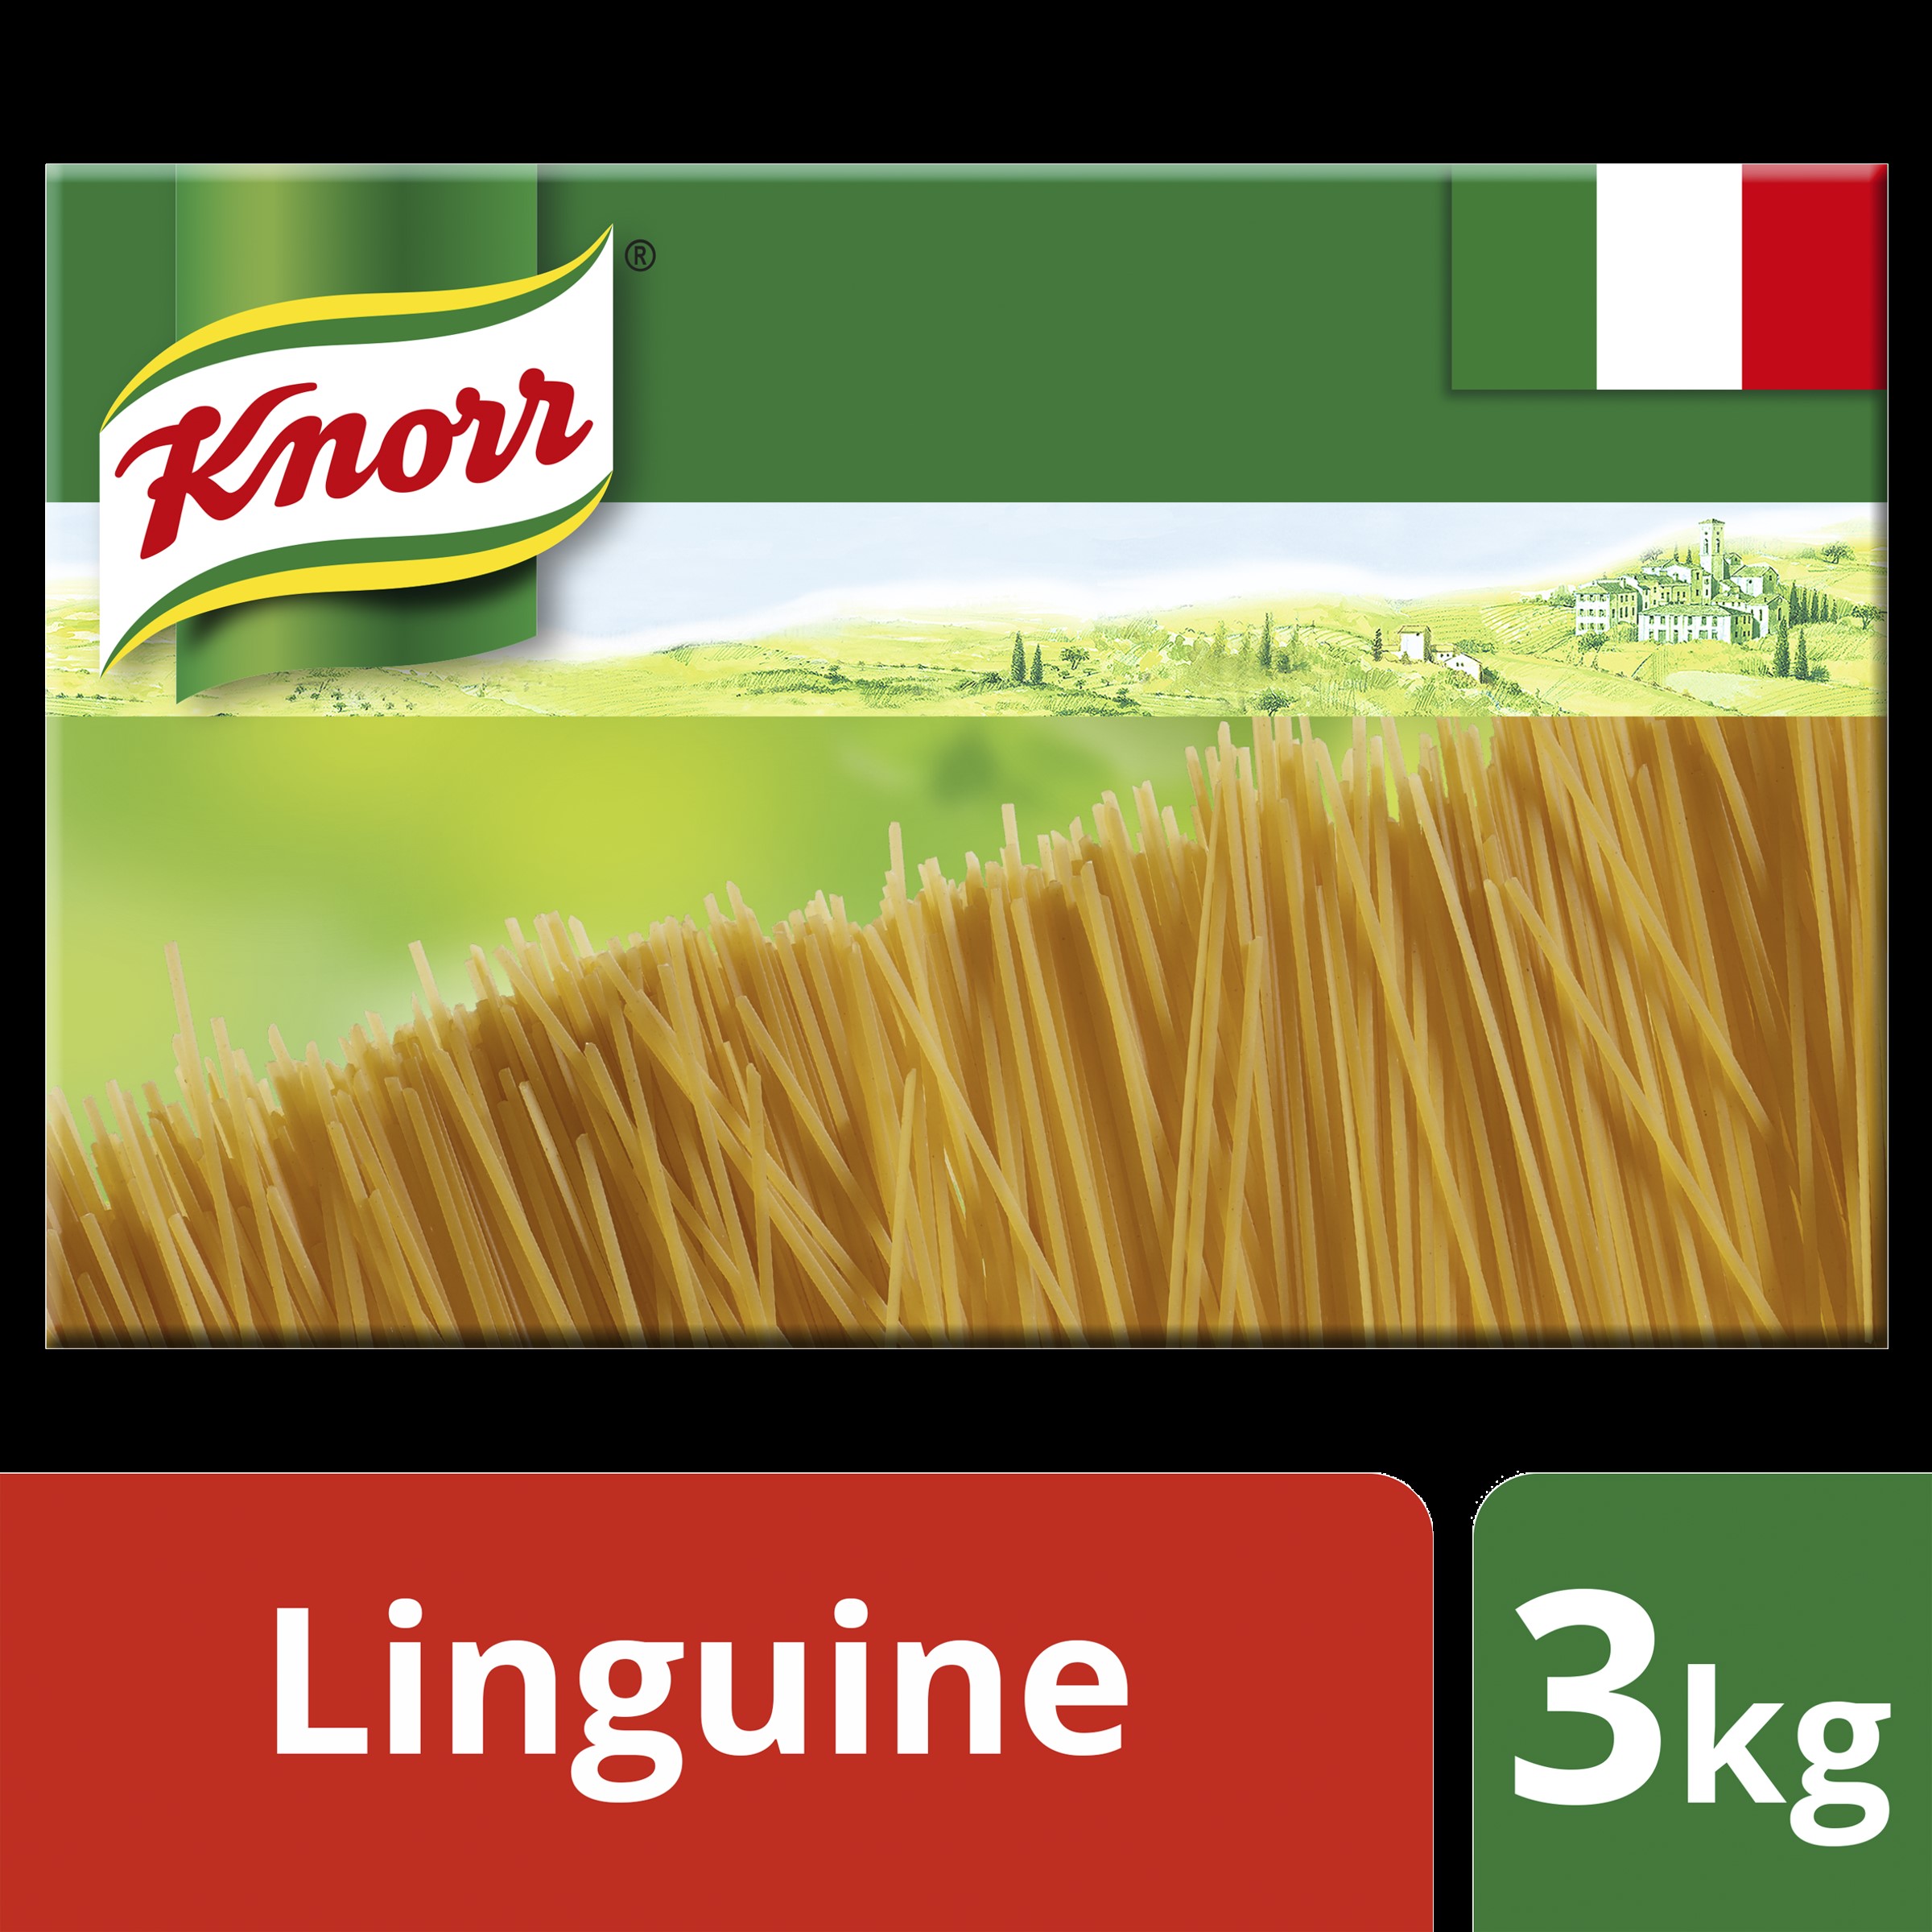 Knorr Linguine 3kg